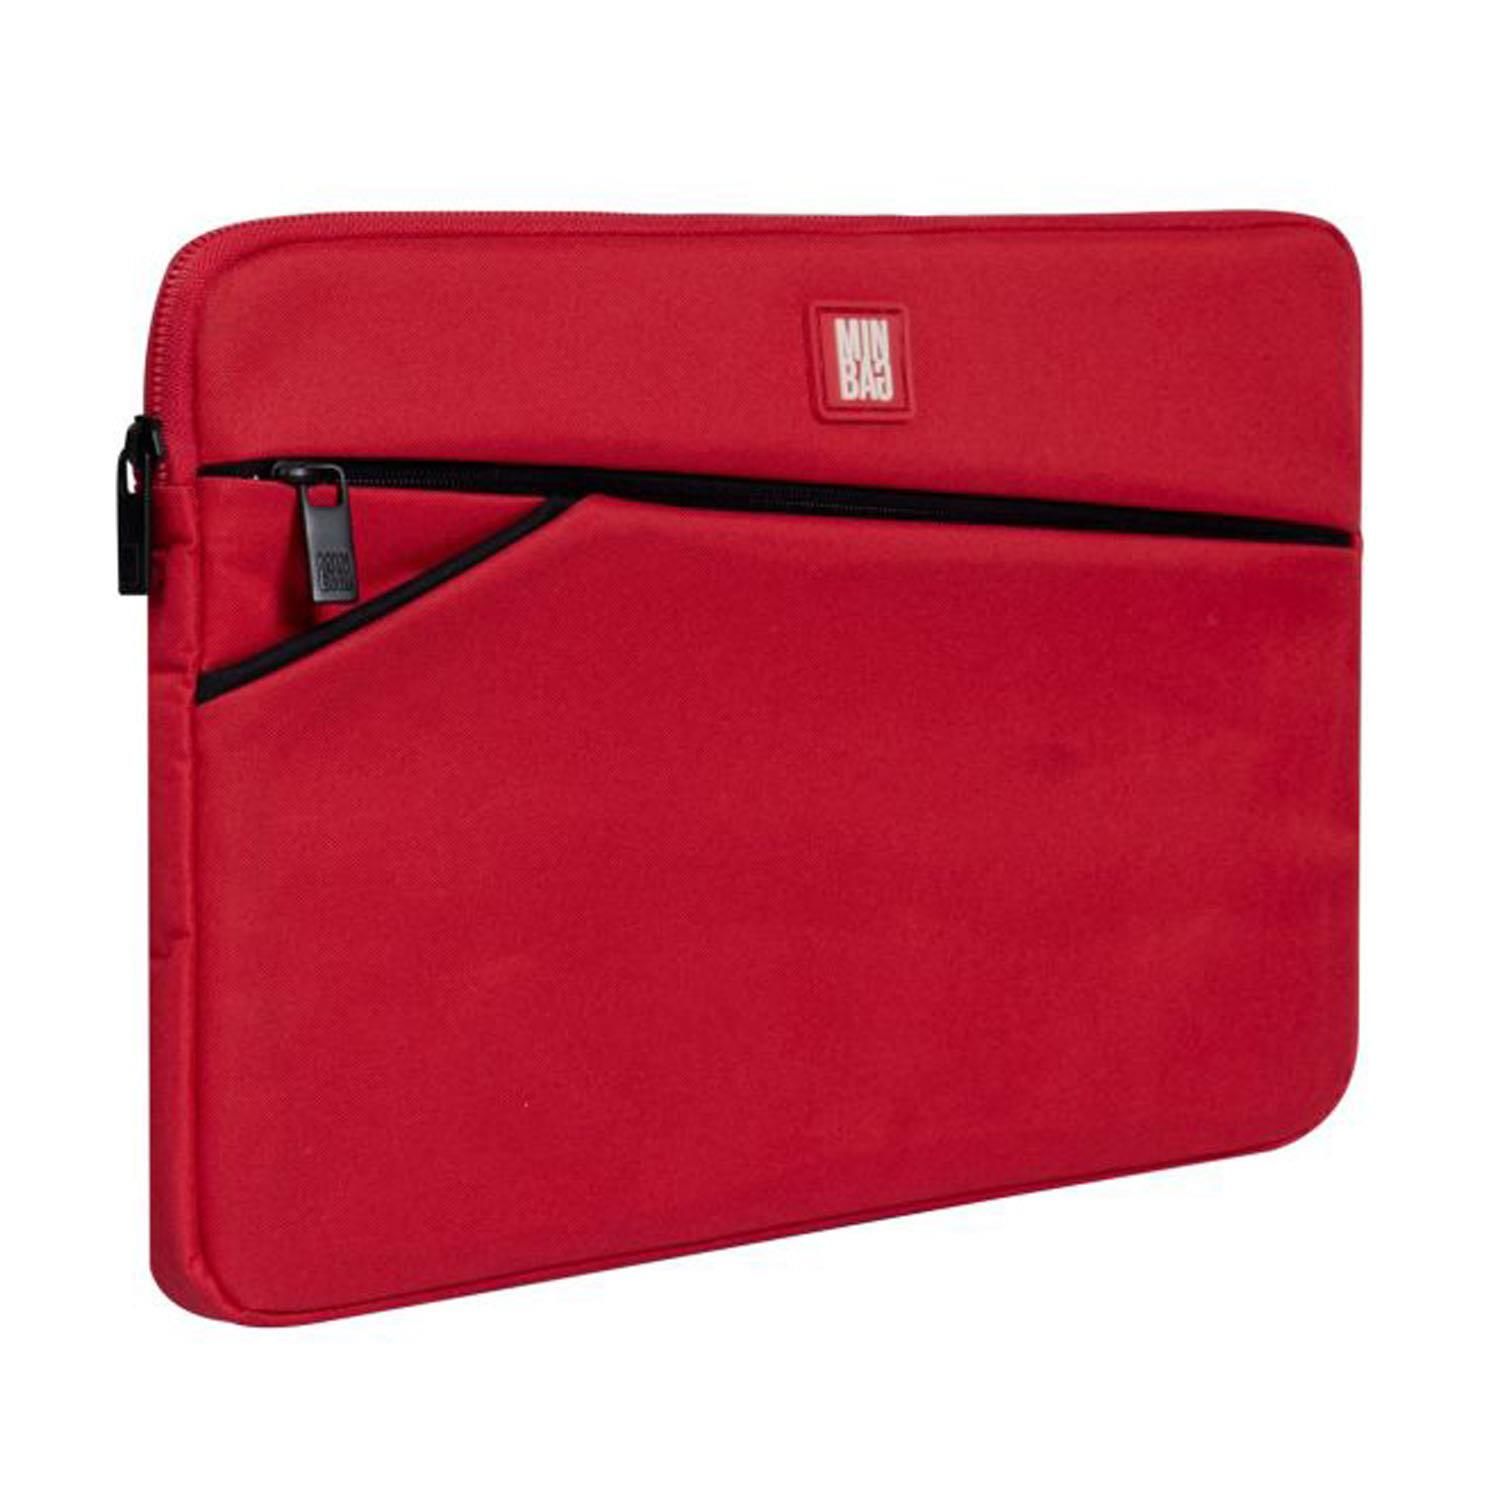 Peter Laptop Çantası 15inch Kırmızı